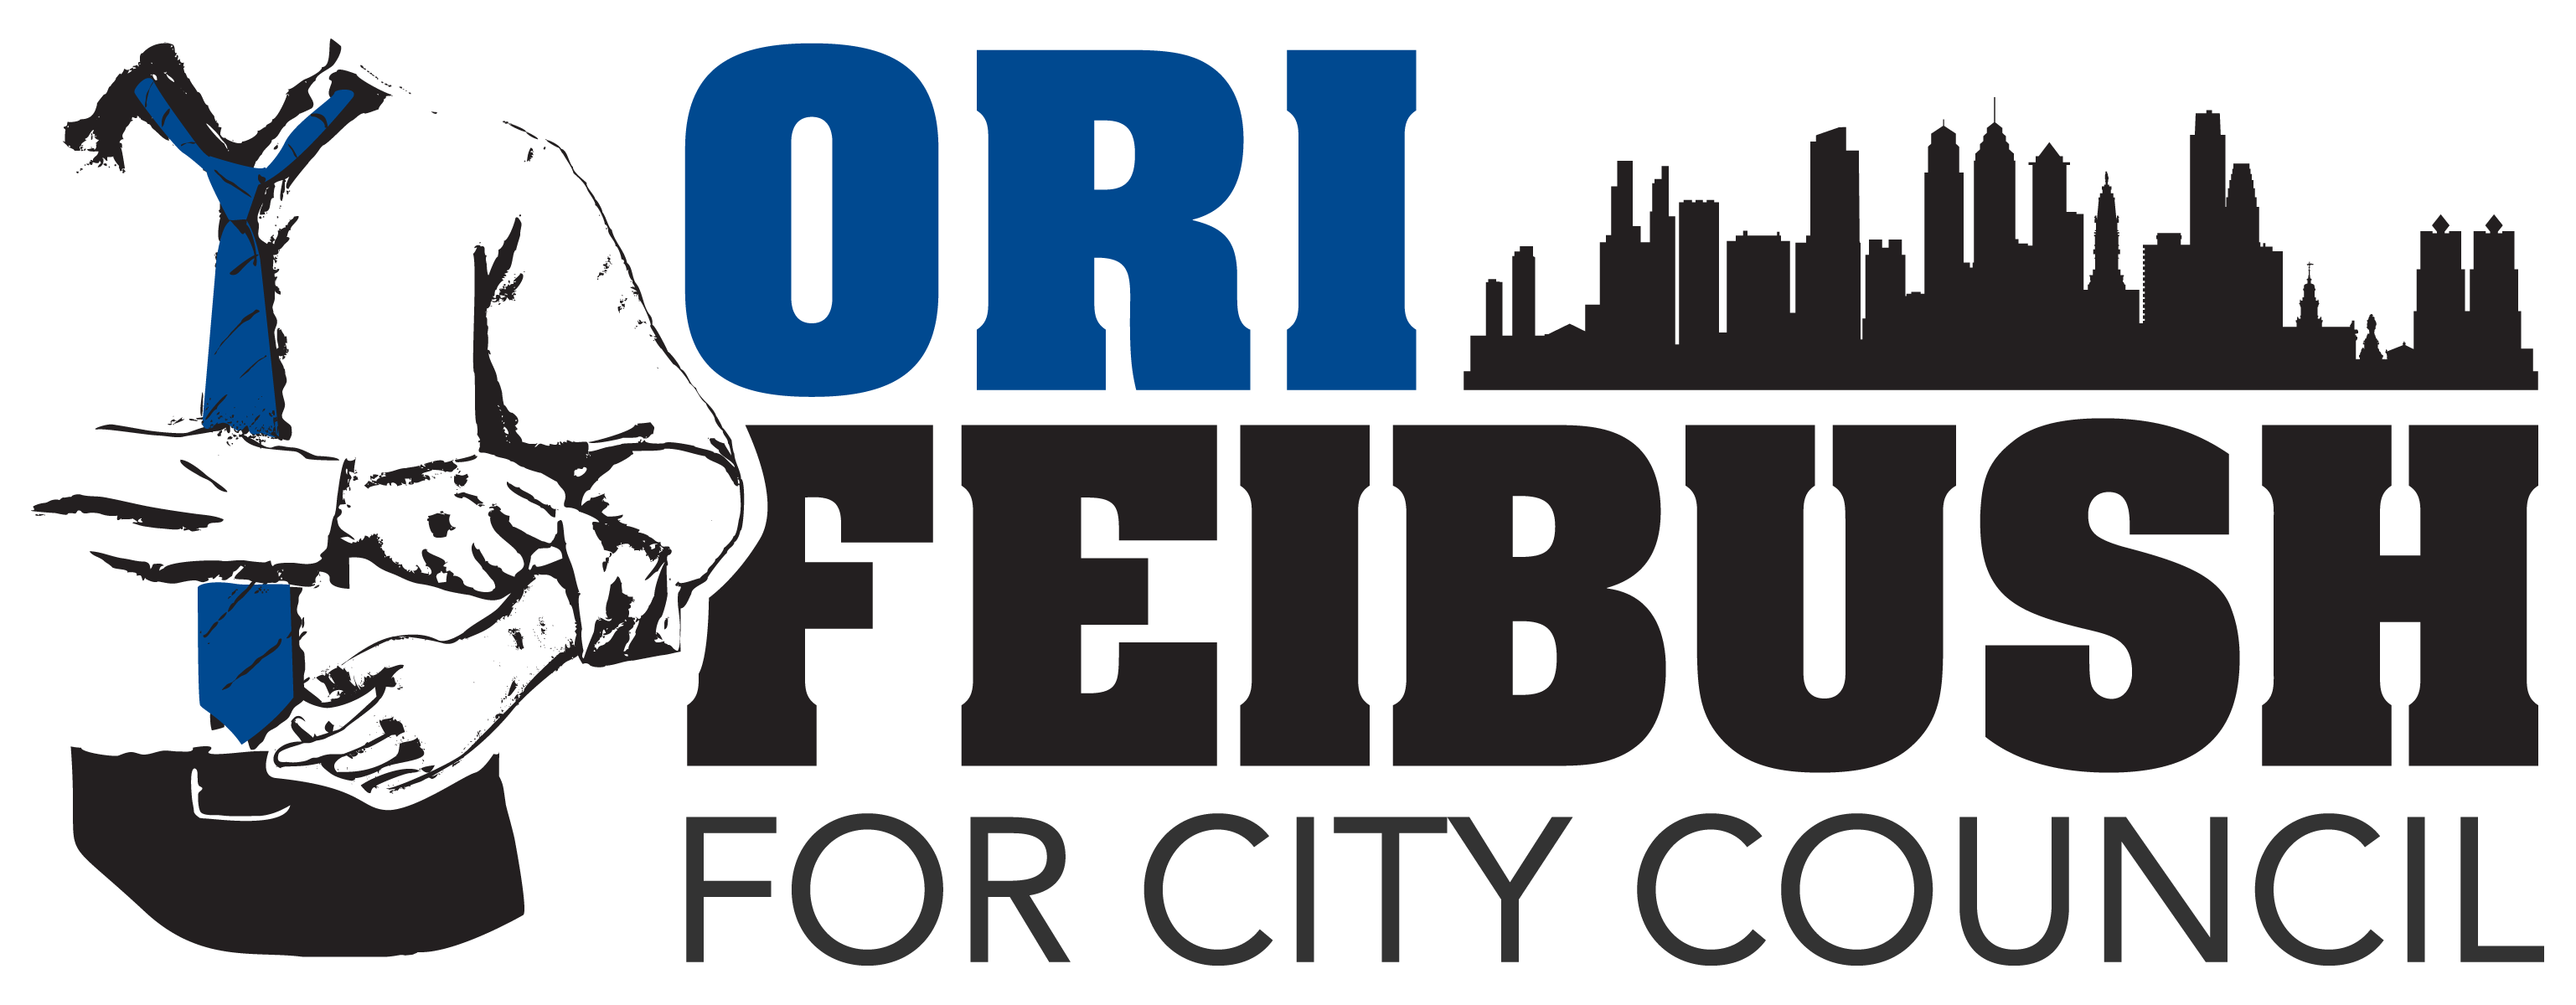 Ori Feibush for City Council